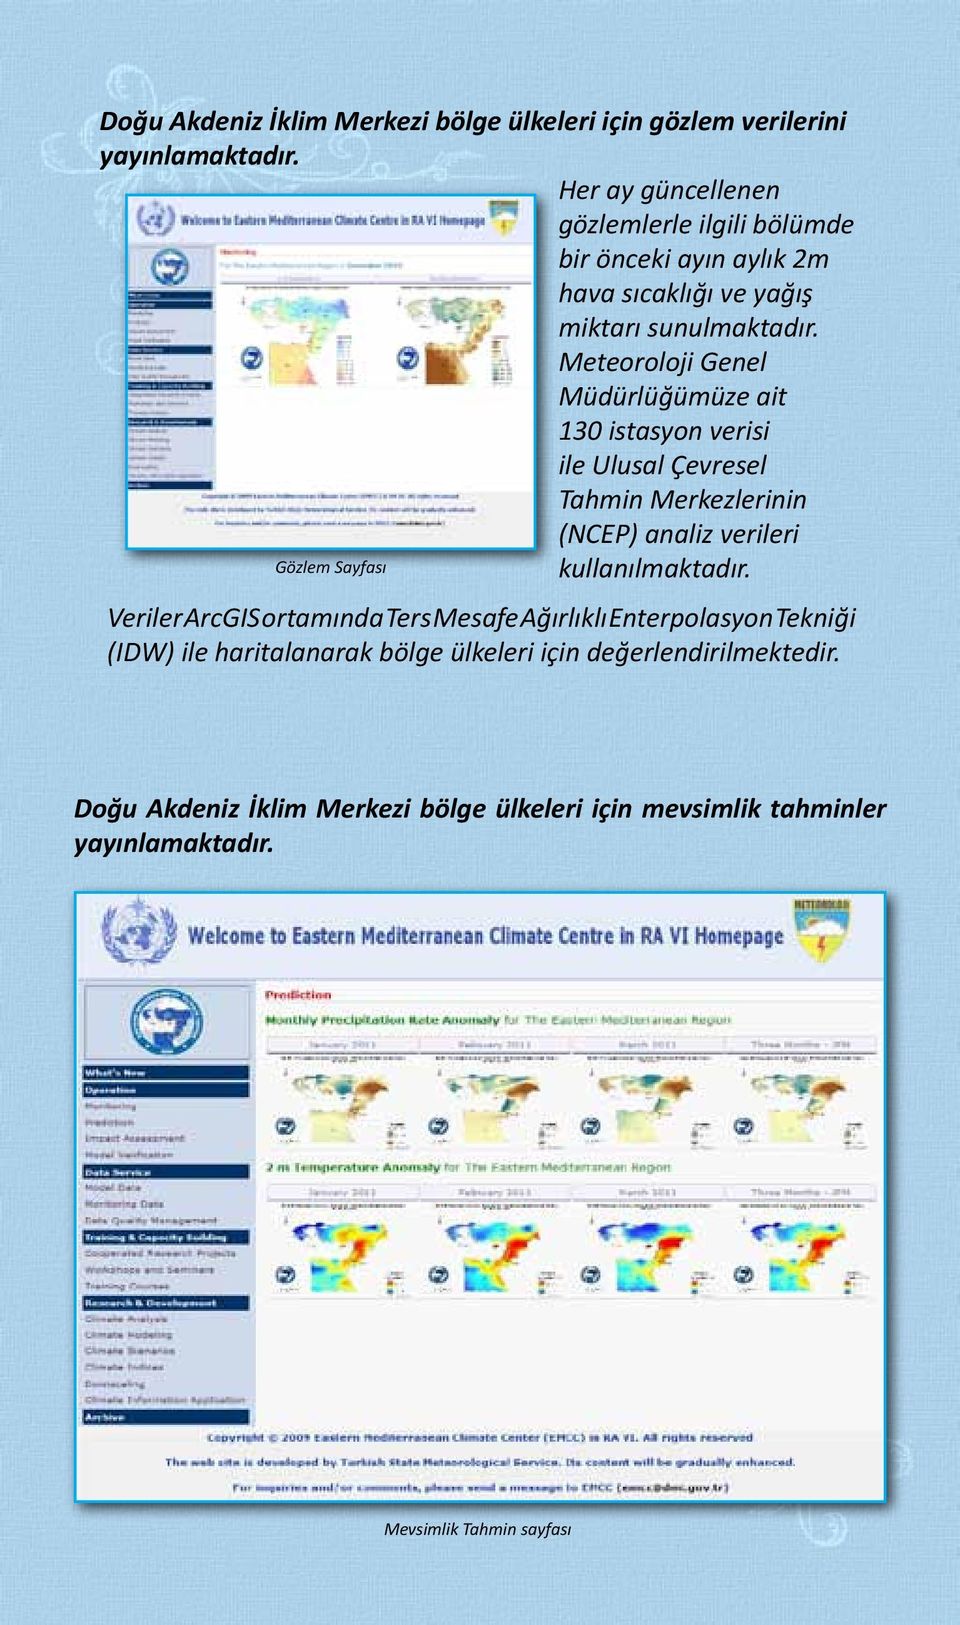 Meteoroloji Genel Müdürlüğümüze ait 130 istasyon verisi ile Ulusal Çevresel Tahmin Merkezlerinin (NCEP) analiz verileri Gözlem Sayfası